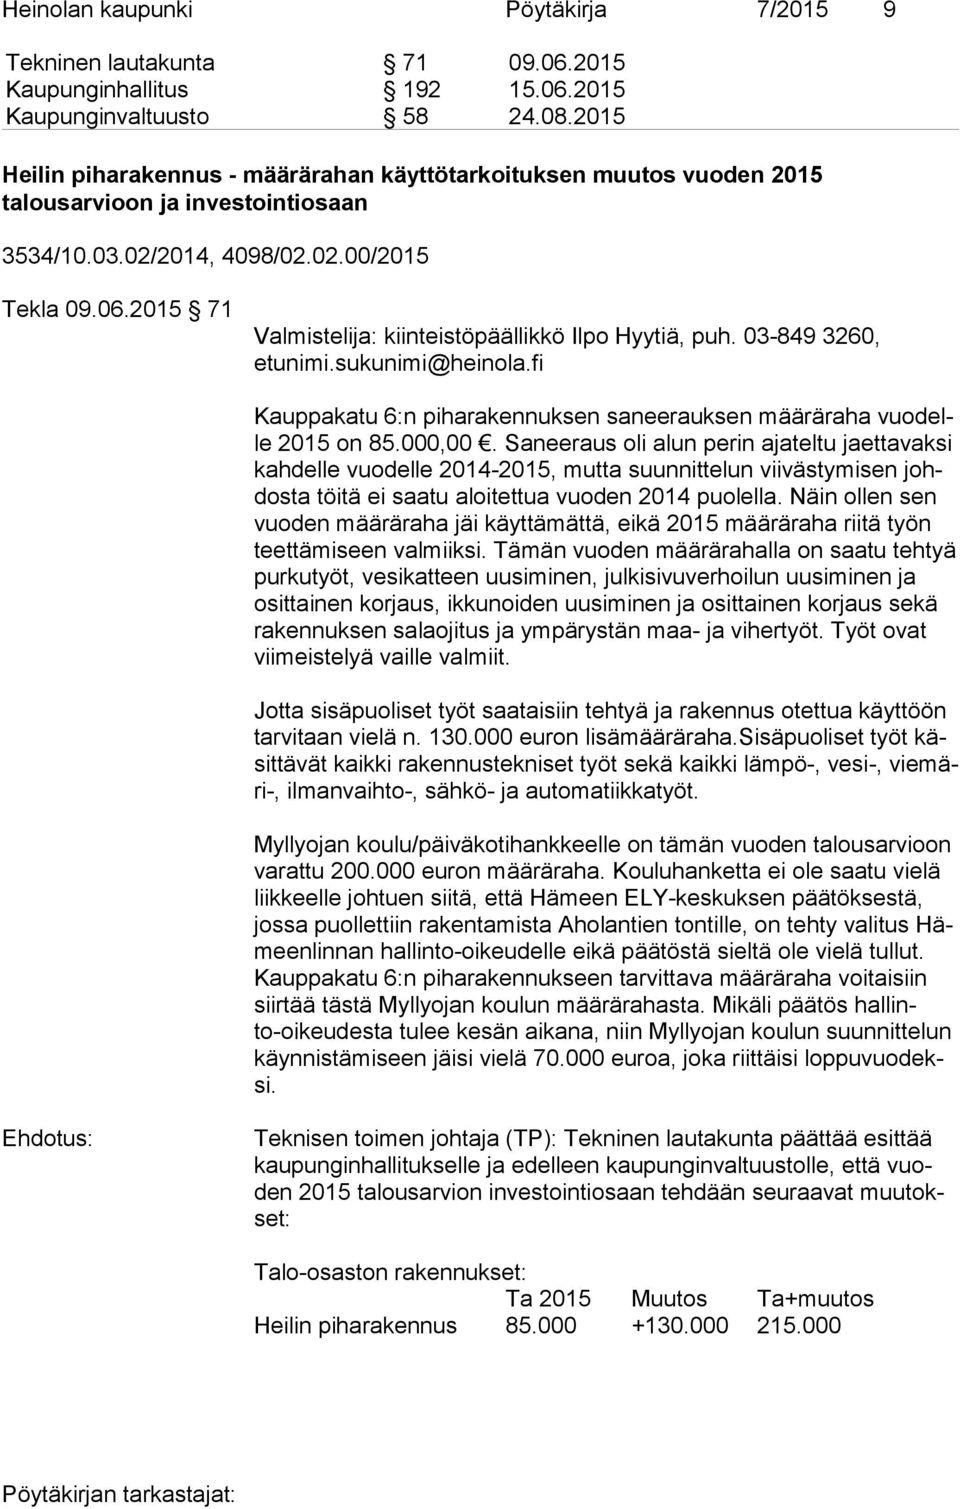 2015 71 Valmistelija: kiinteistöpäällikkö Ilpo Hyytiä, puh. 03-849 3260, etunimi.sukunimi@heinola.fi Kauppakatu 6:n piharakennuksen saneerauksen määräraha vuo delle 2015 on 85.000,00.